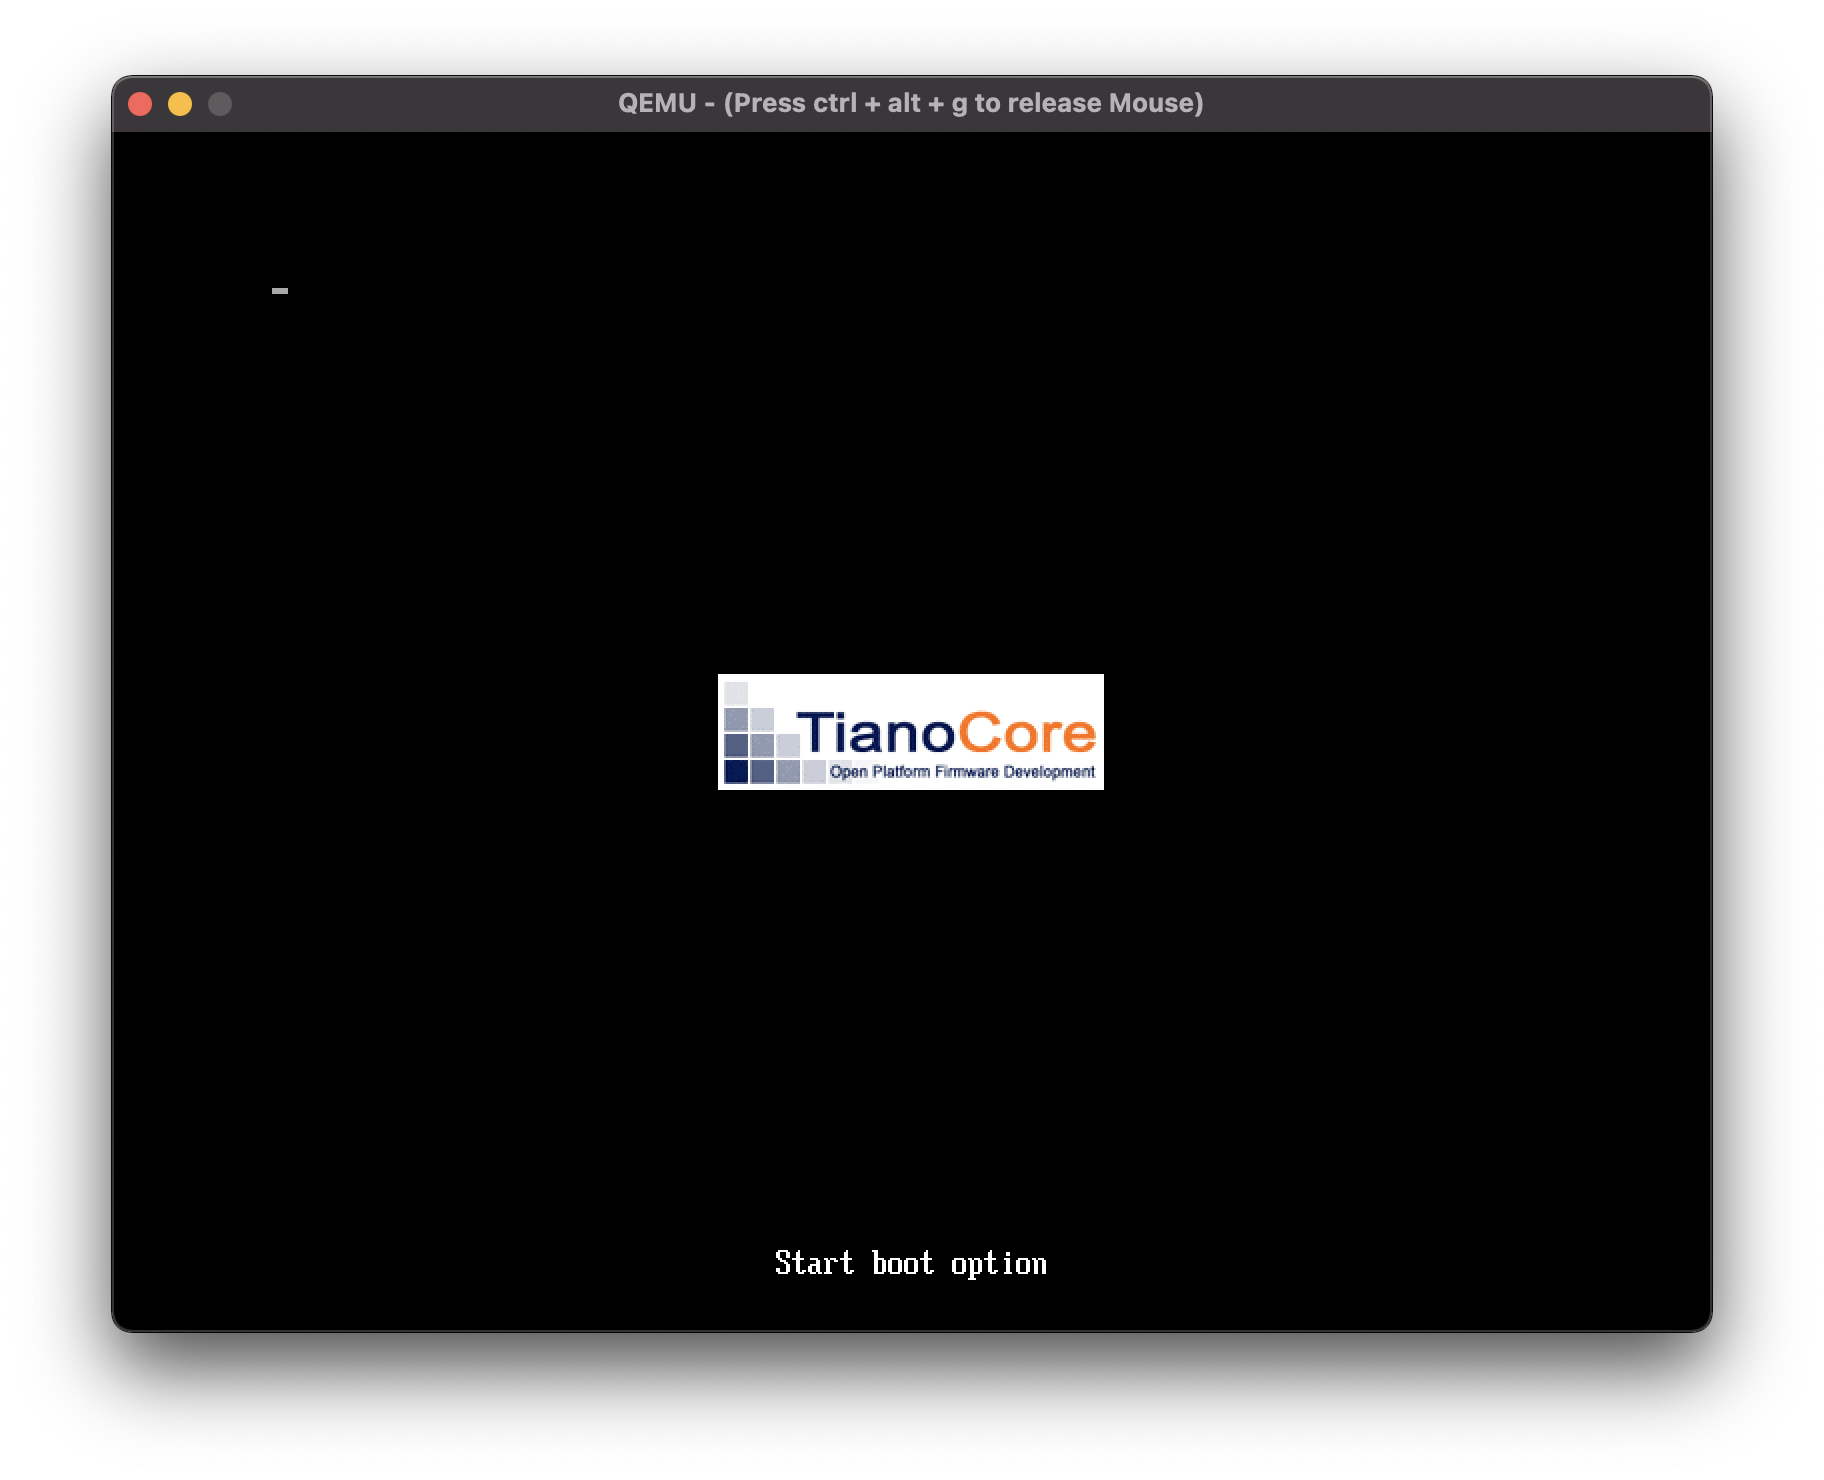 QEMU Bootup Screen